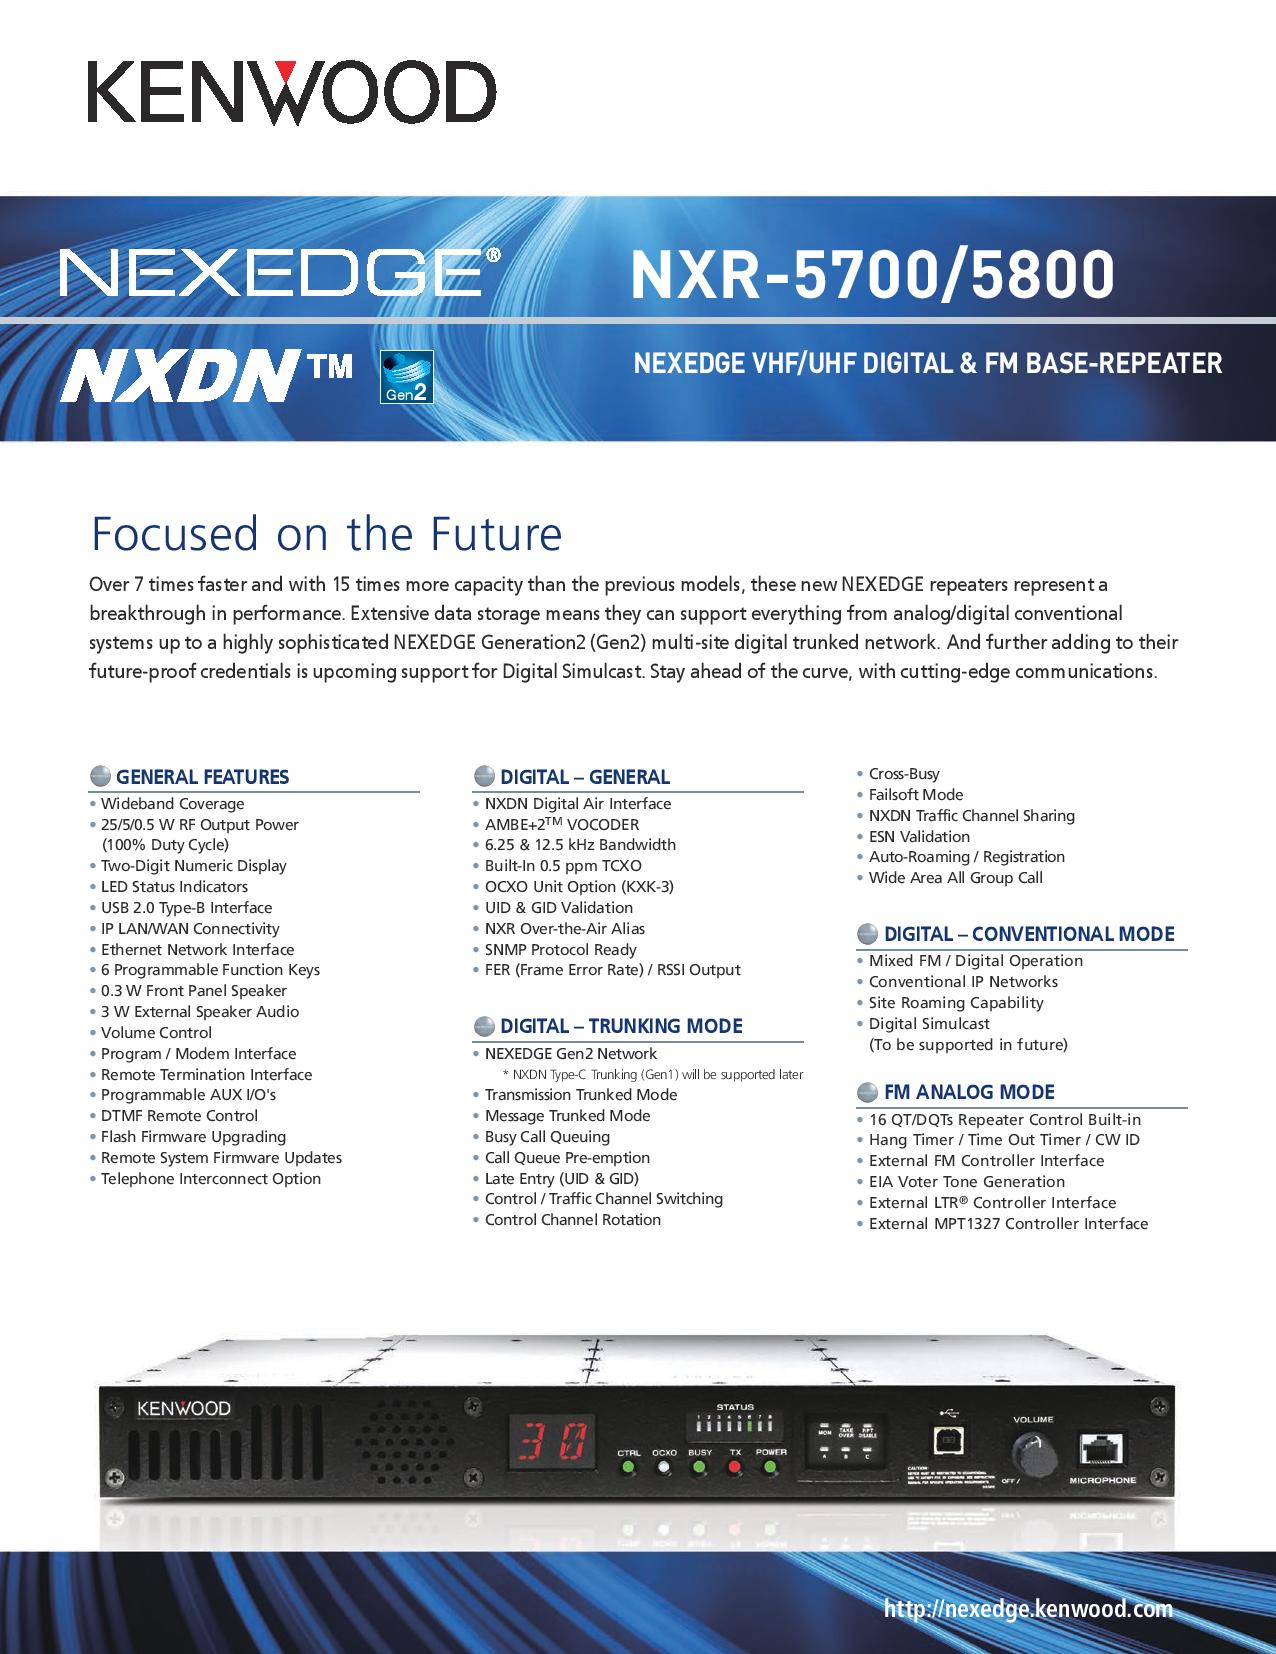 NXR-5700/5800 Specsheet